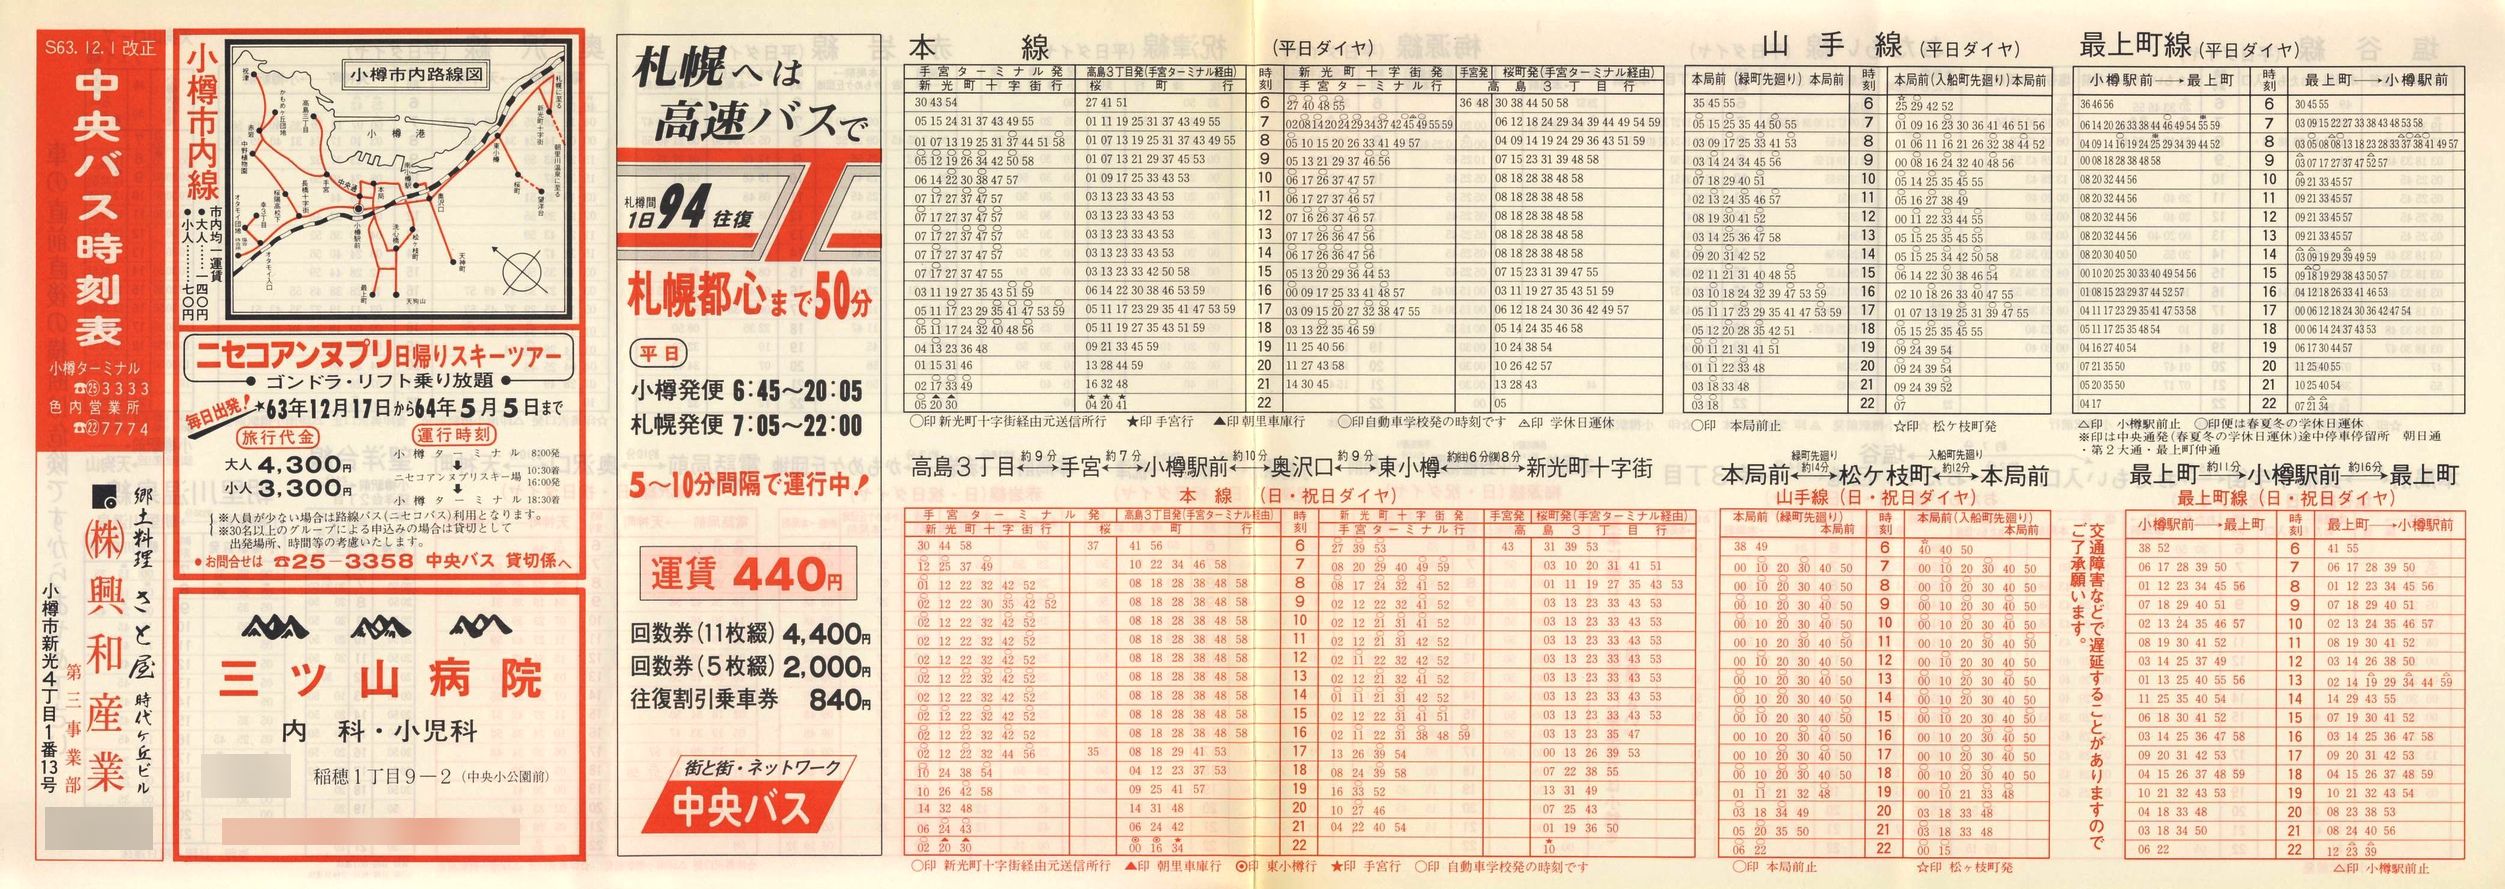 1988-12-01改正_北海道中央バス(小樽)_小樽市内線時刻表表面